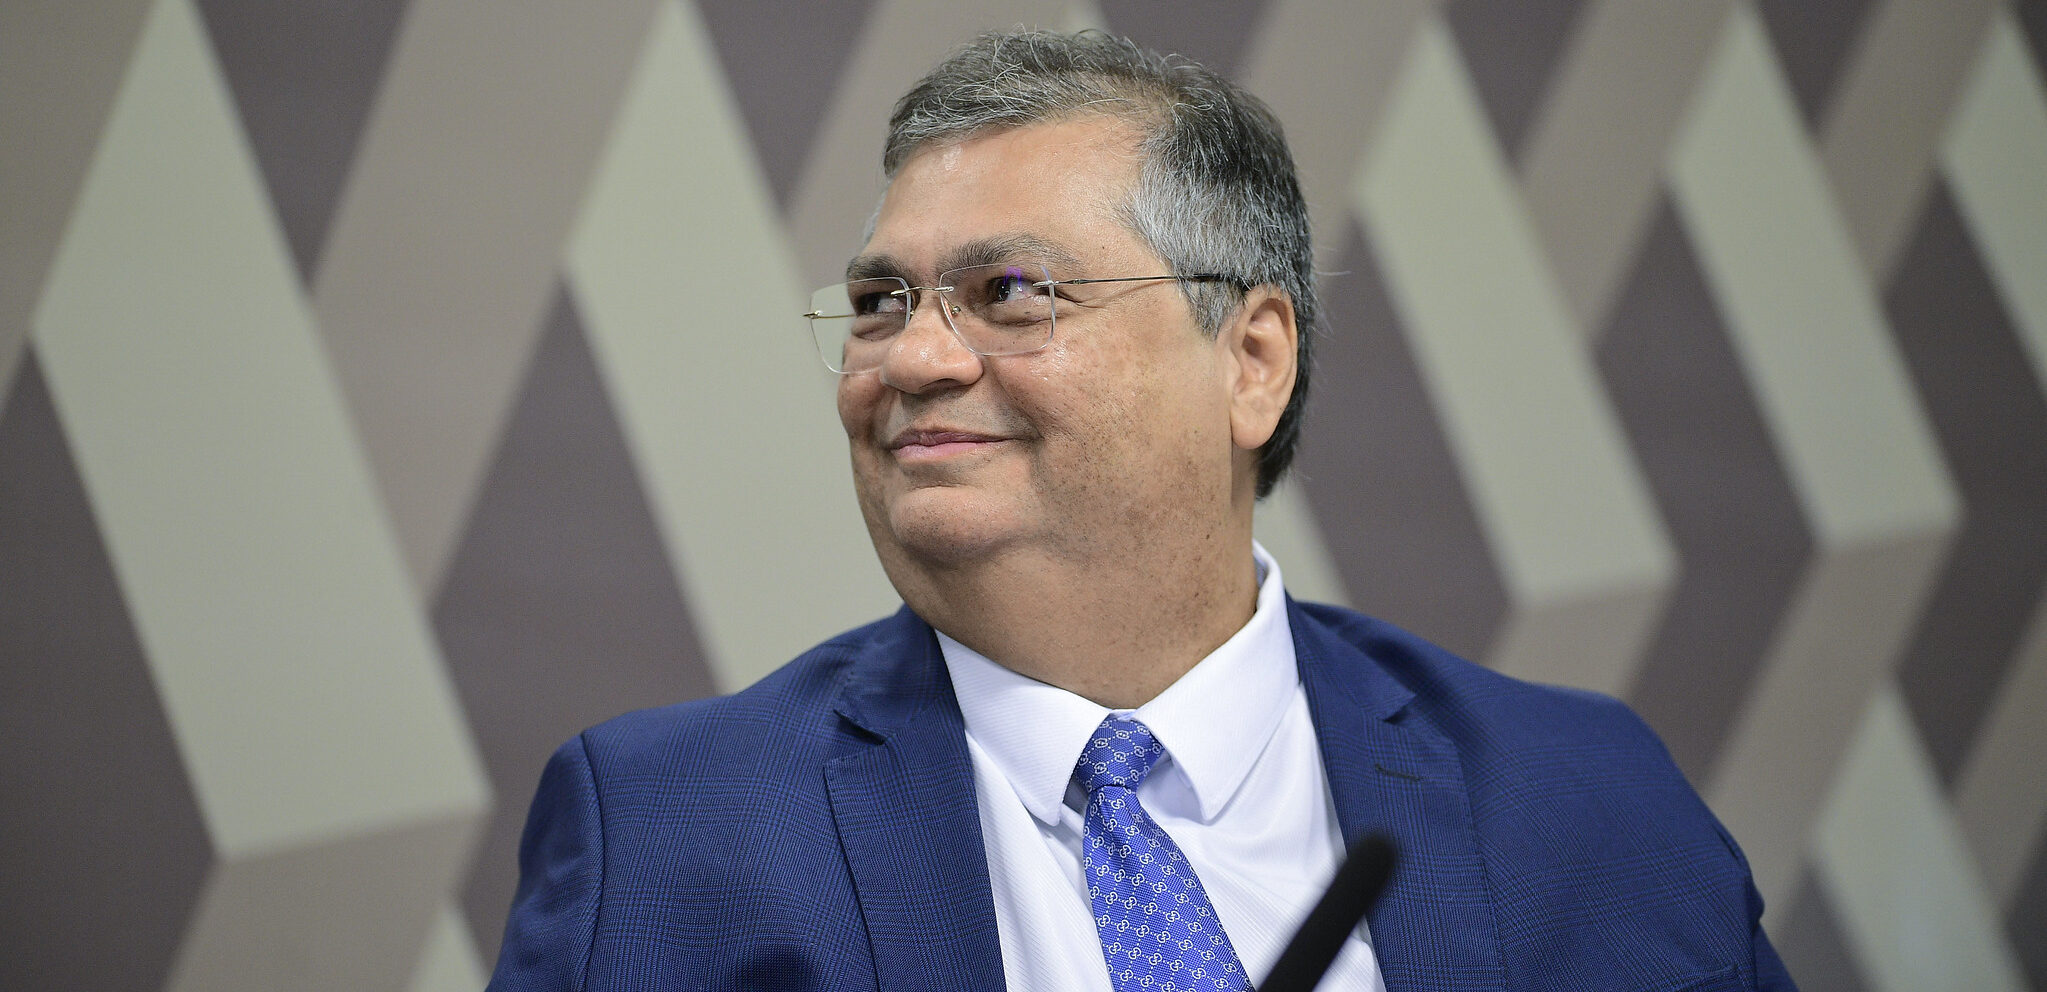 Flávio Dino é ministro da Justiça, foi juiz e governador do Maranhão por dois mandatos. Em 2022, foi eleito senador pelo estado nordestino. Se for aprovado, ficará com a cadeira de Rosa Weber, que se aposentou